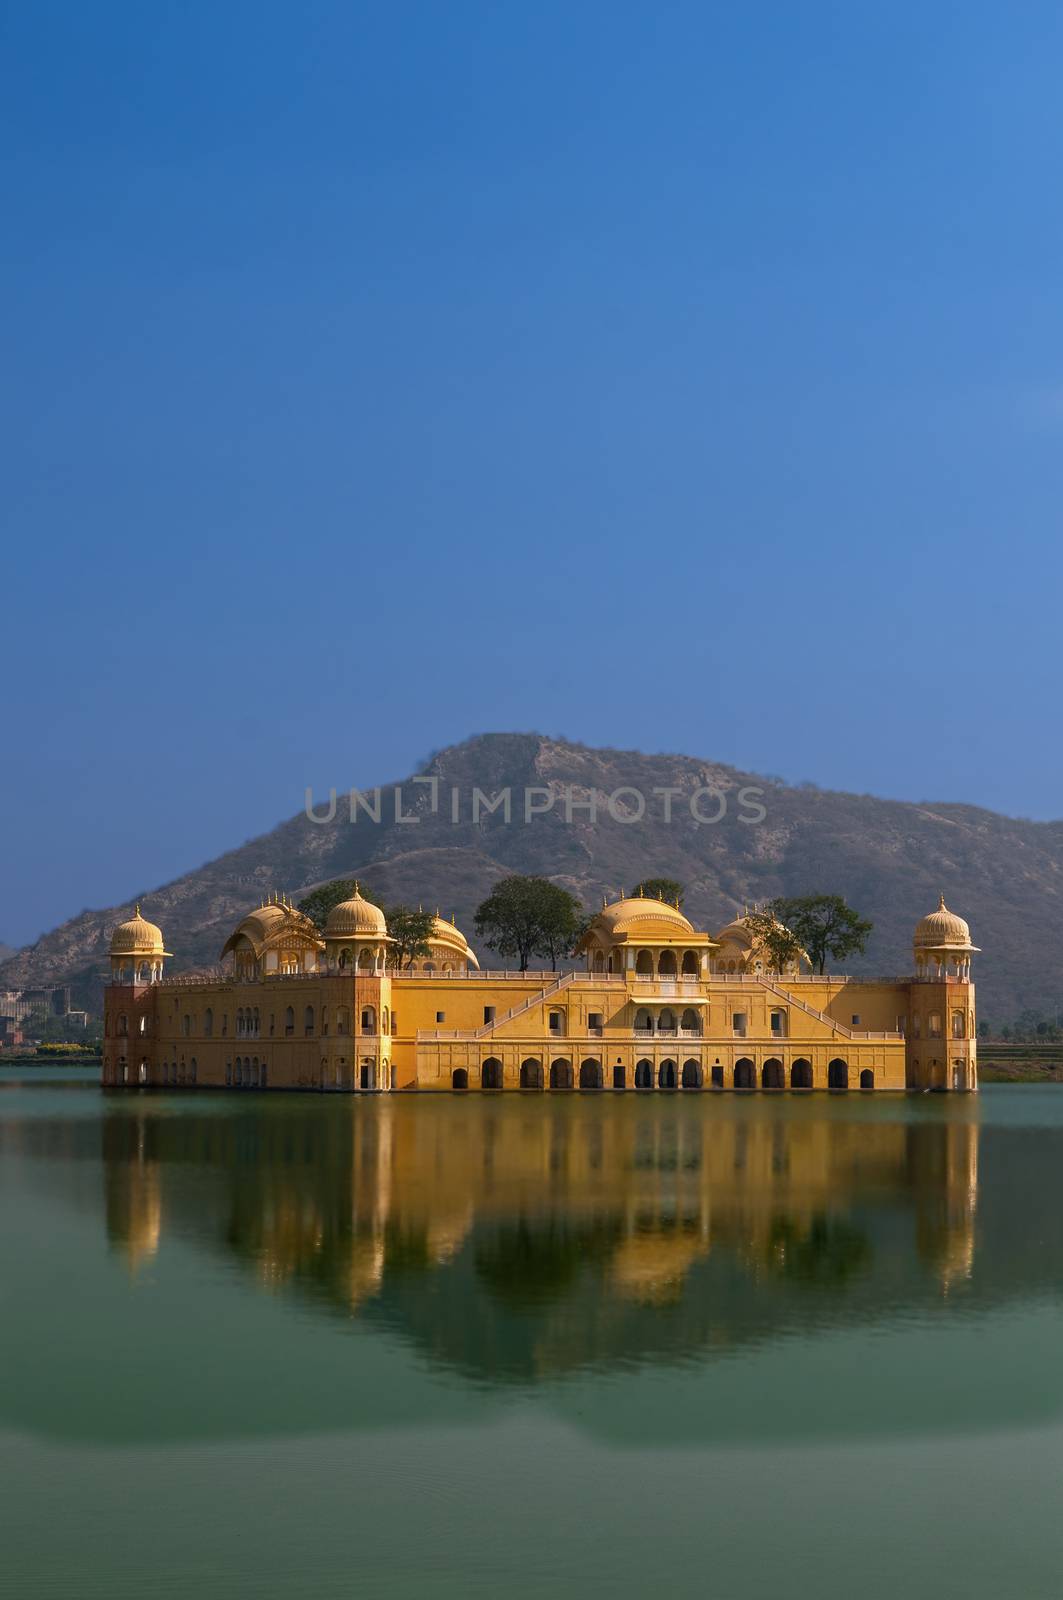 Water Palace (Jal Mahal) in Man Sagar Lake. Jaipur, Rajasthan, India. 18th Century. The palace Dzhal-Mahal